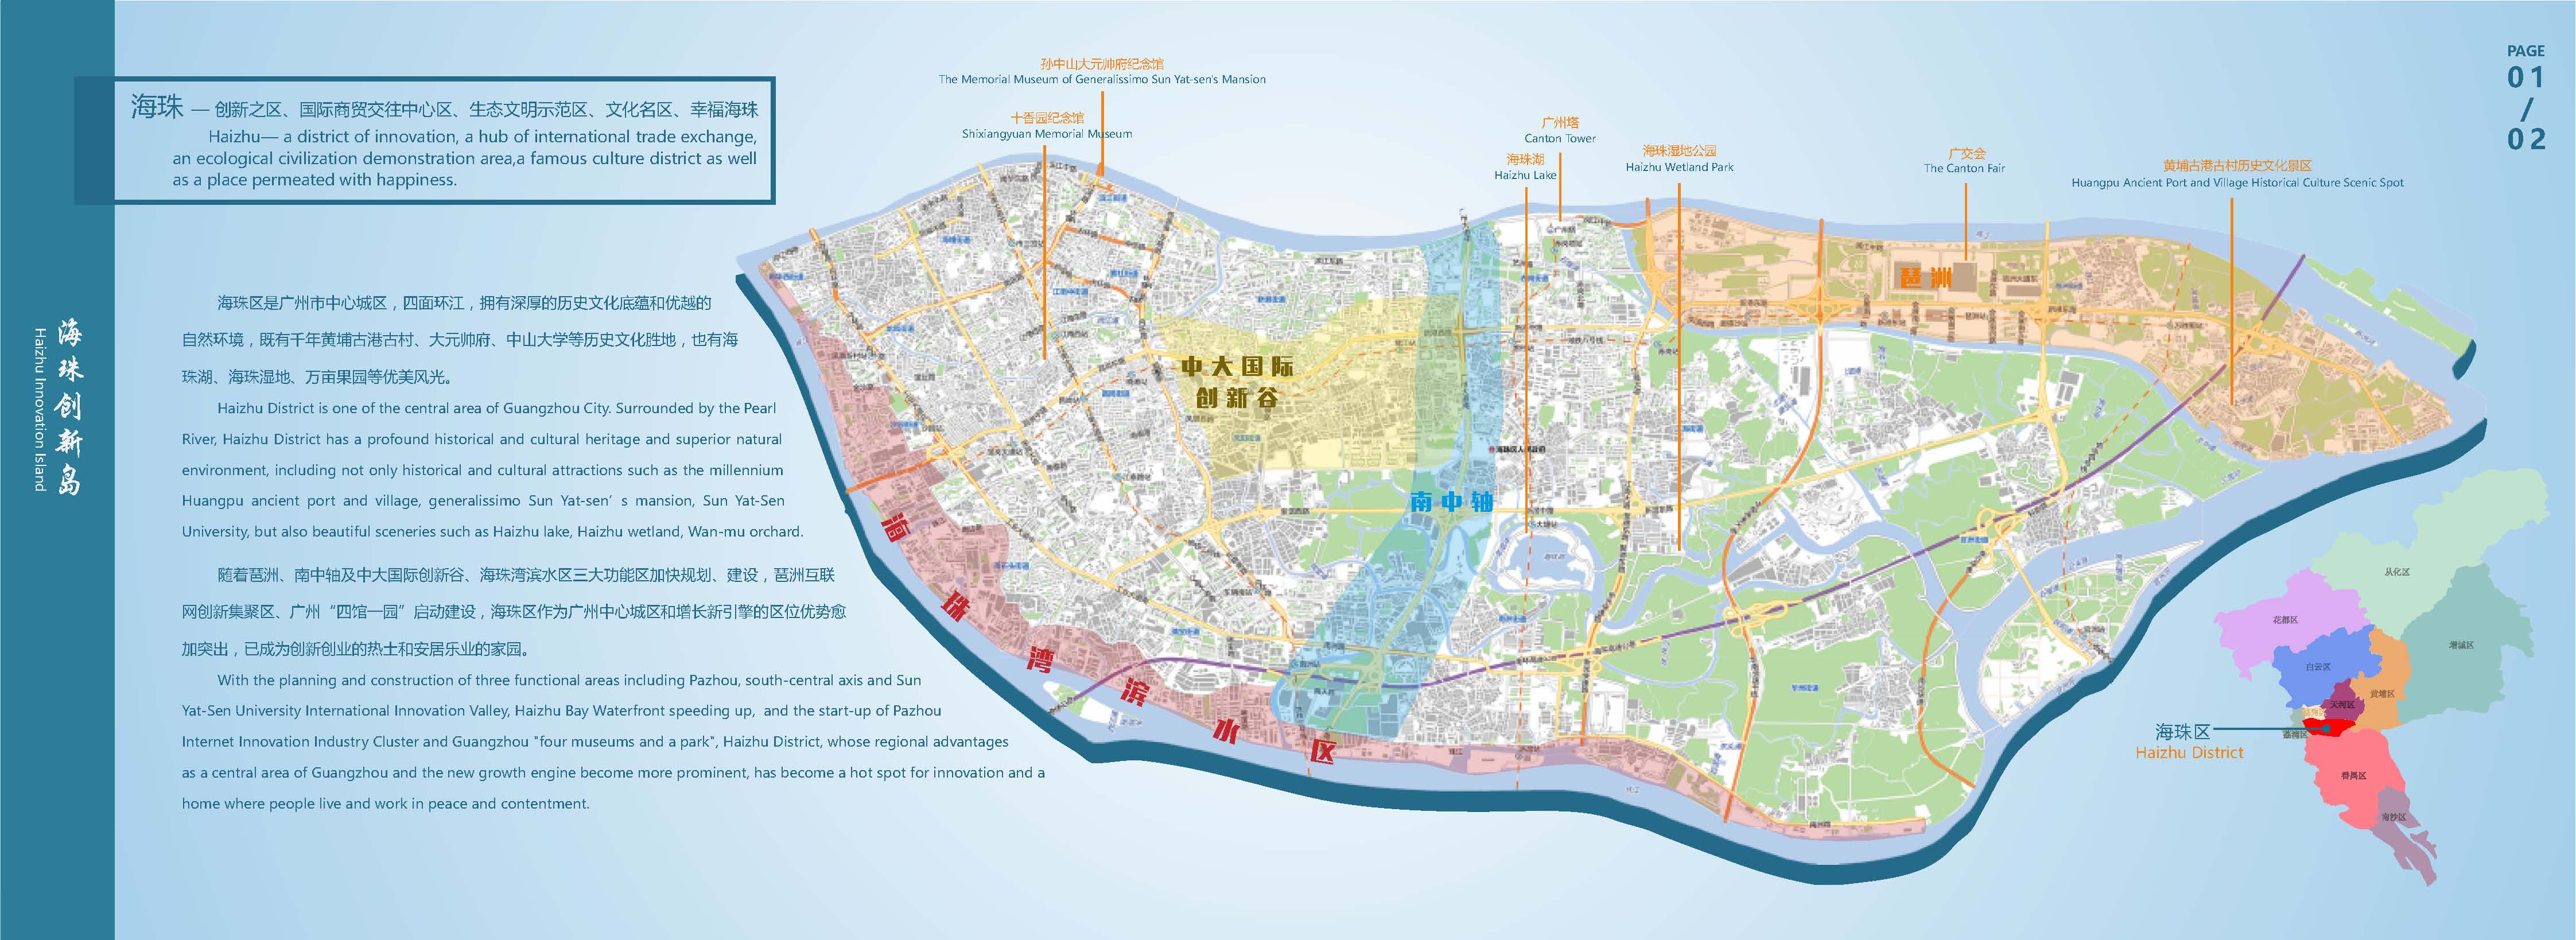 海珠区滨江街地图图片